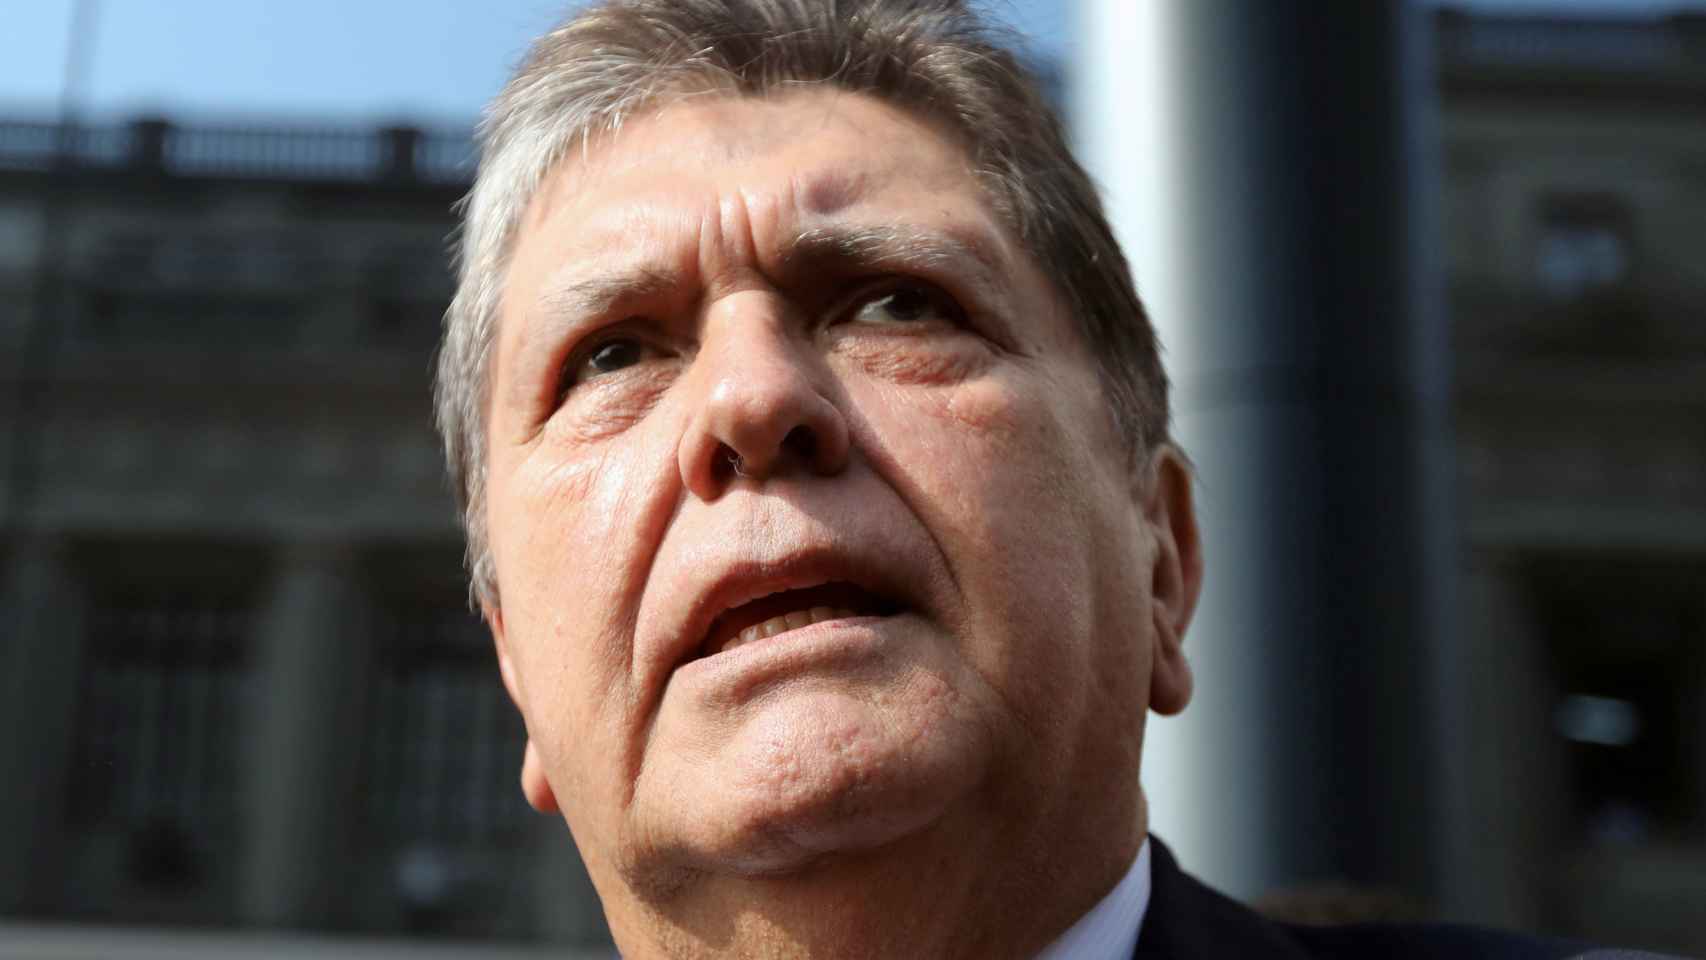 Alan García, expresidente de Perú.